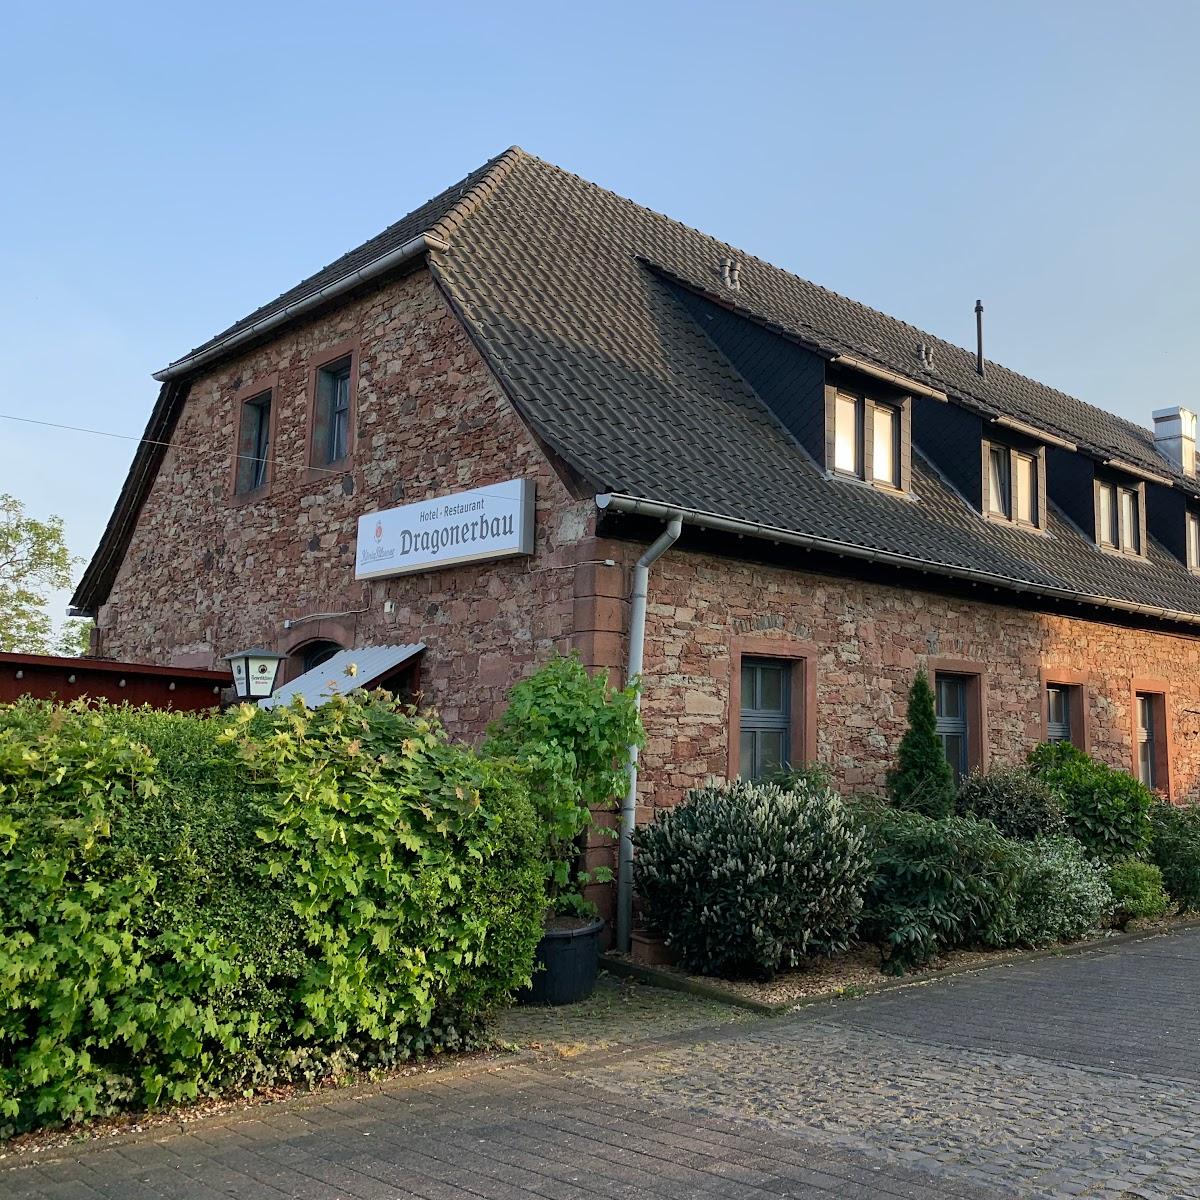 Restaurant "Hotel Dragonerbau" in Langenselbold